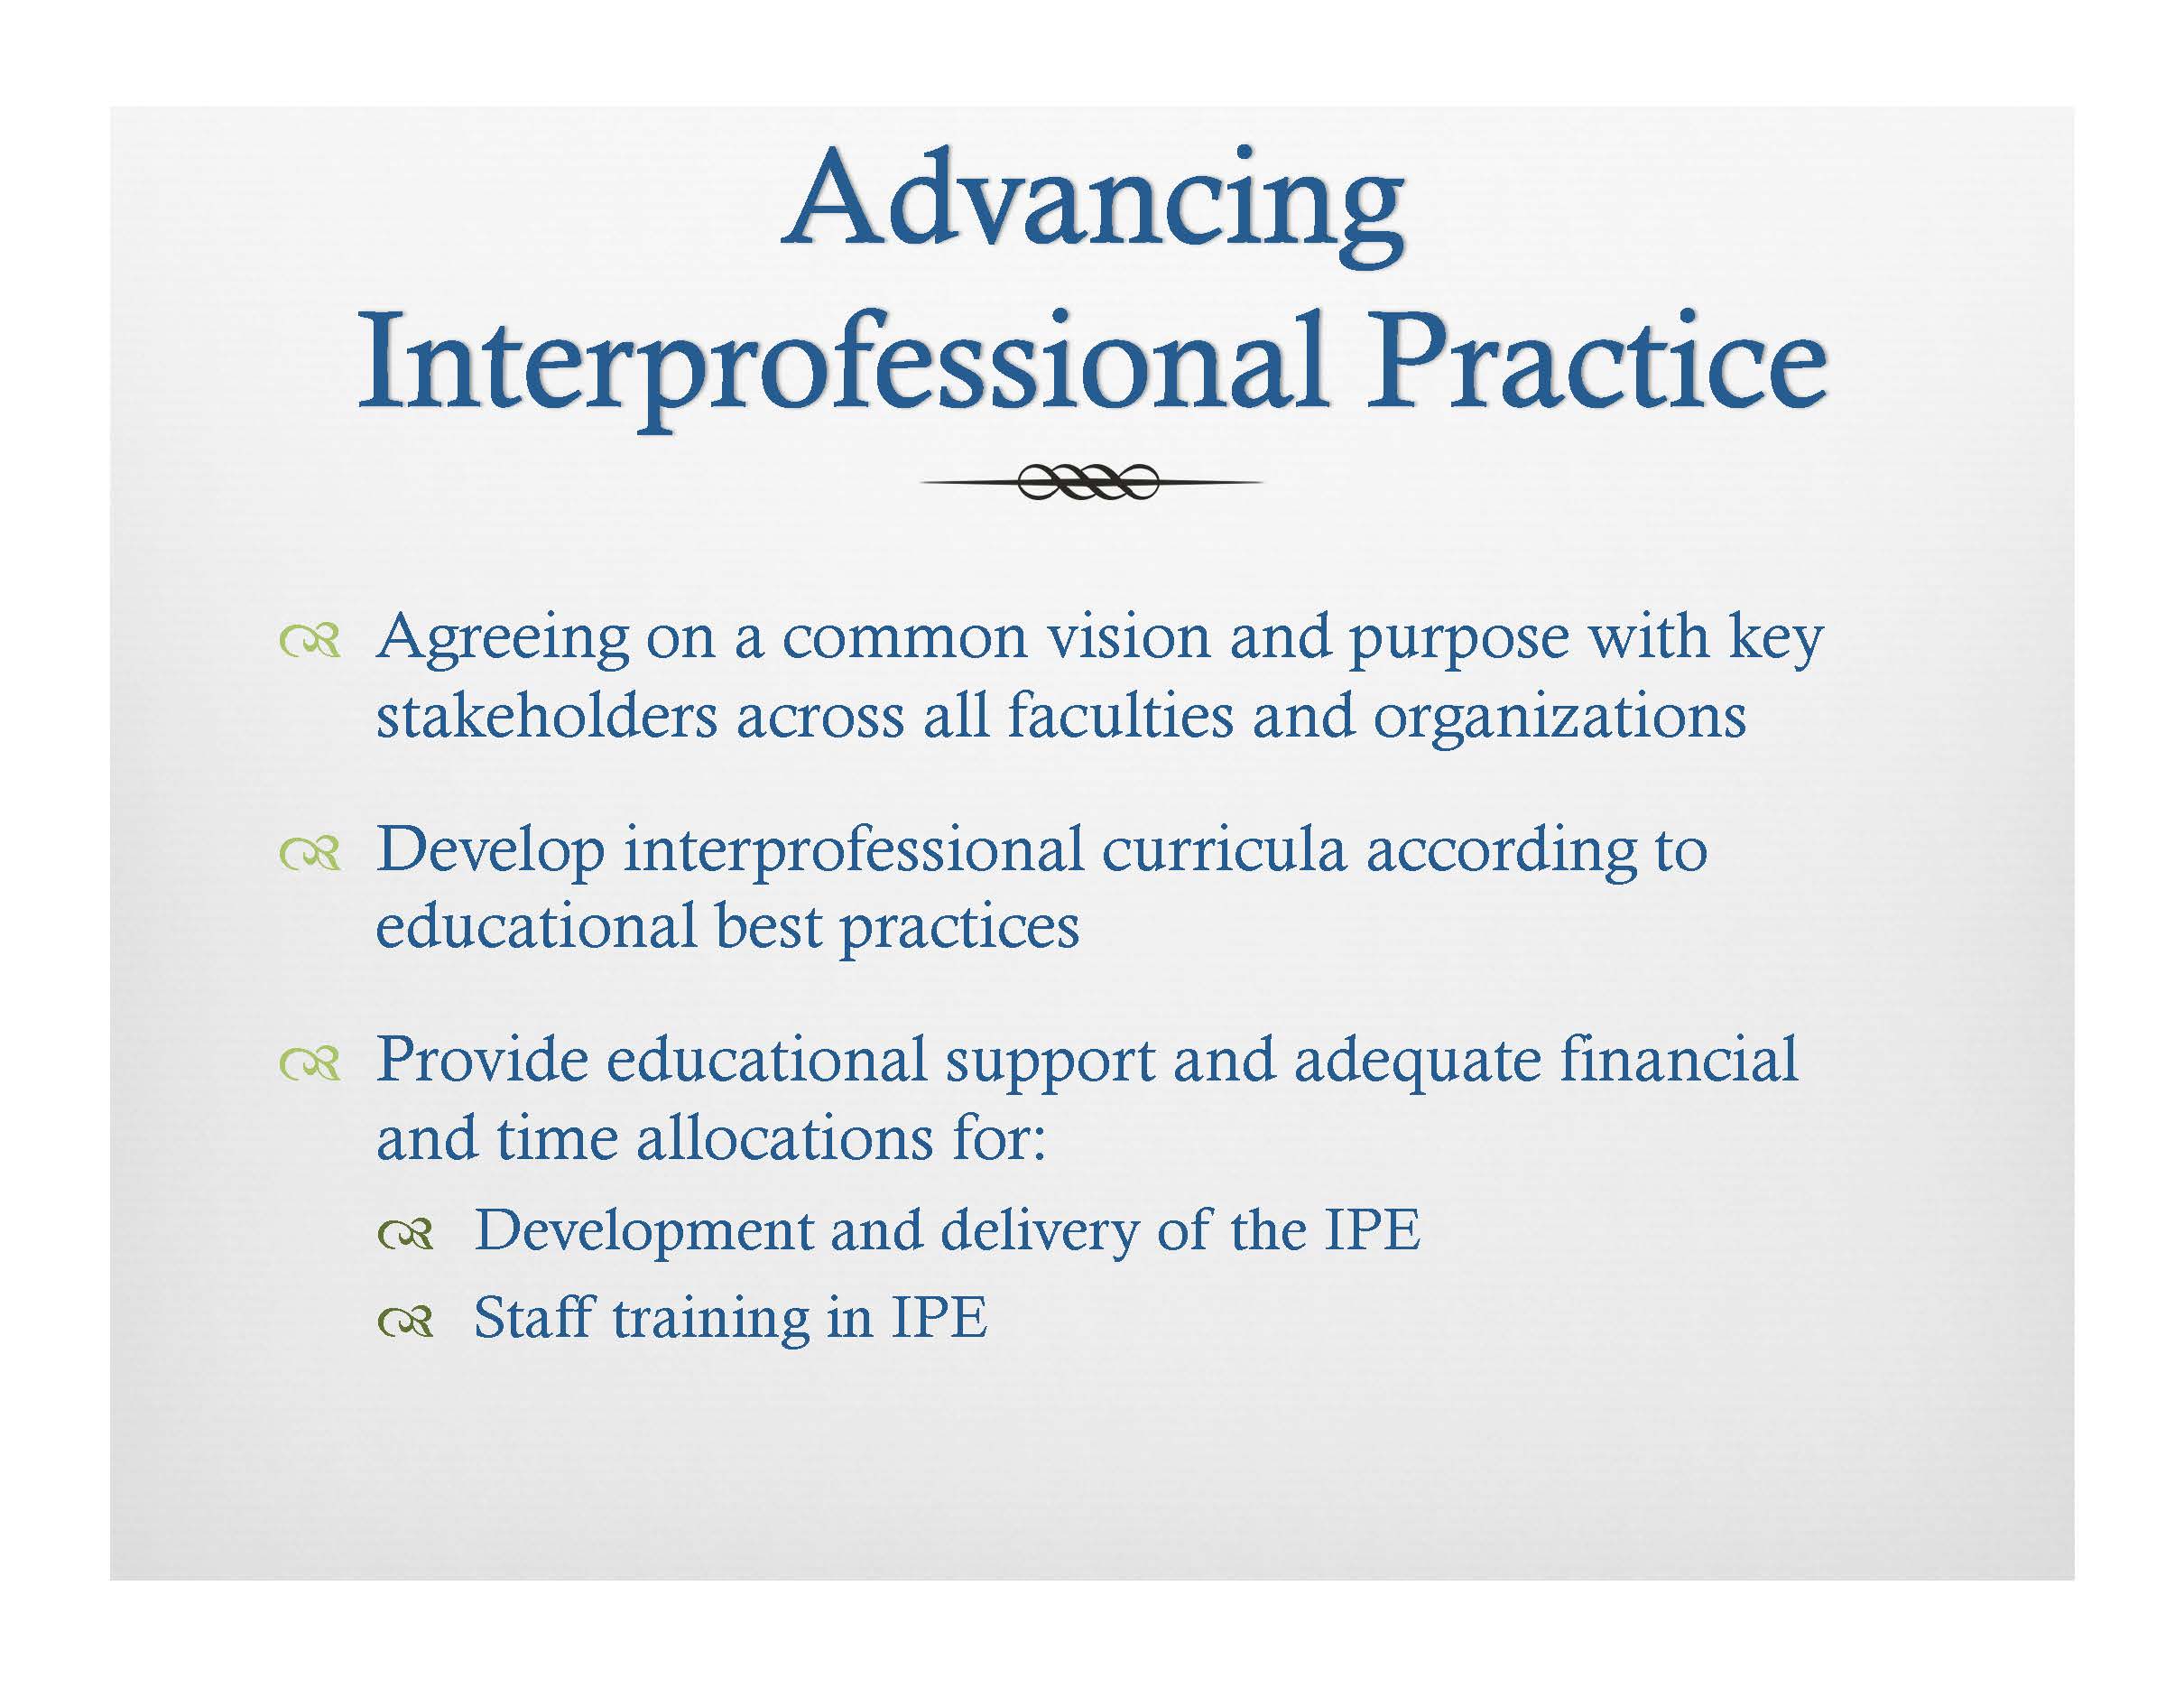 Interprofessional education Gropack_Page_07.jpg